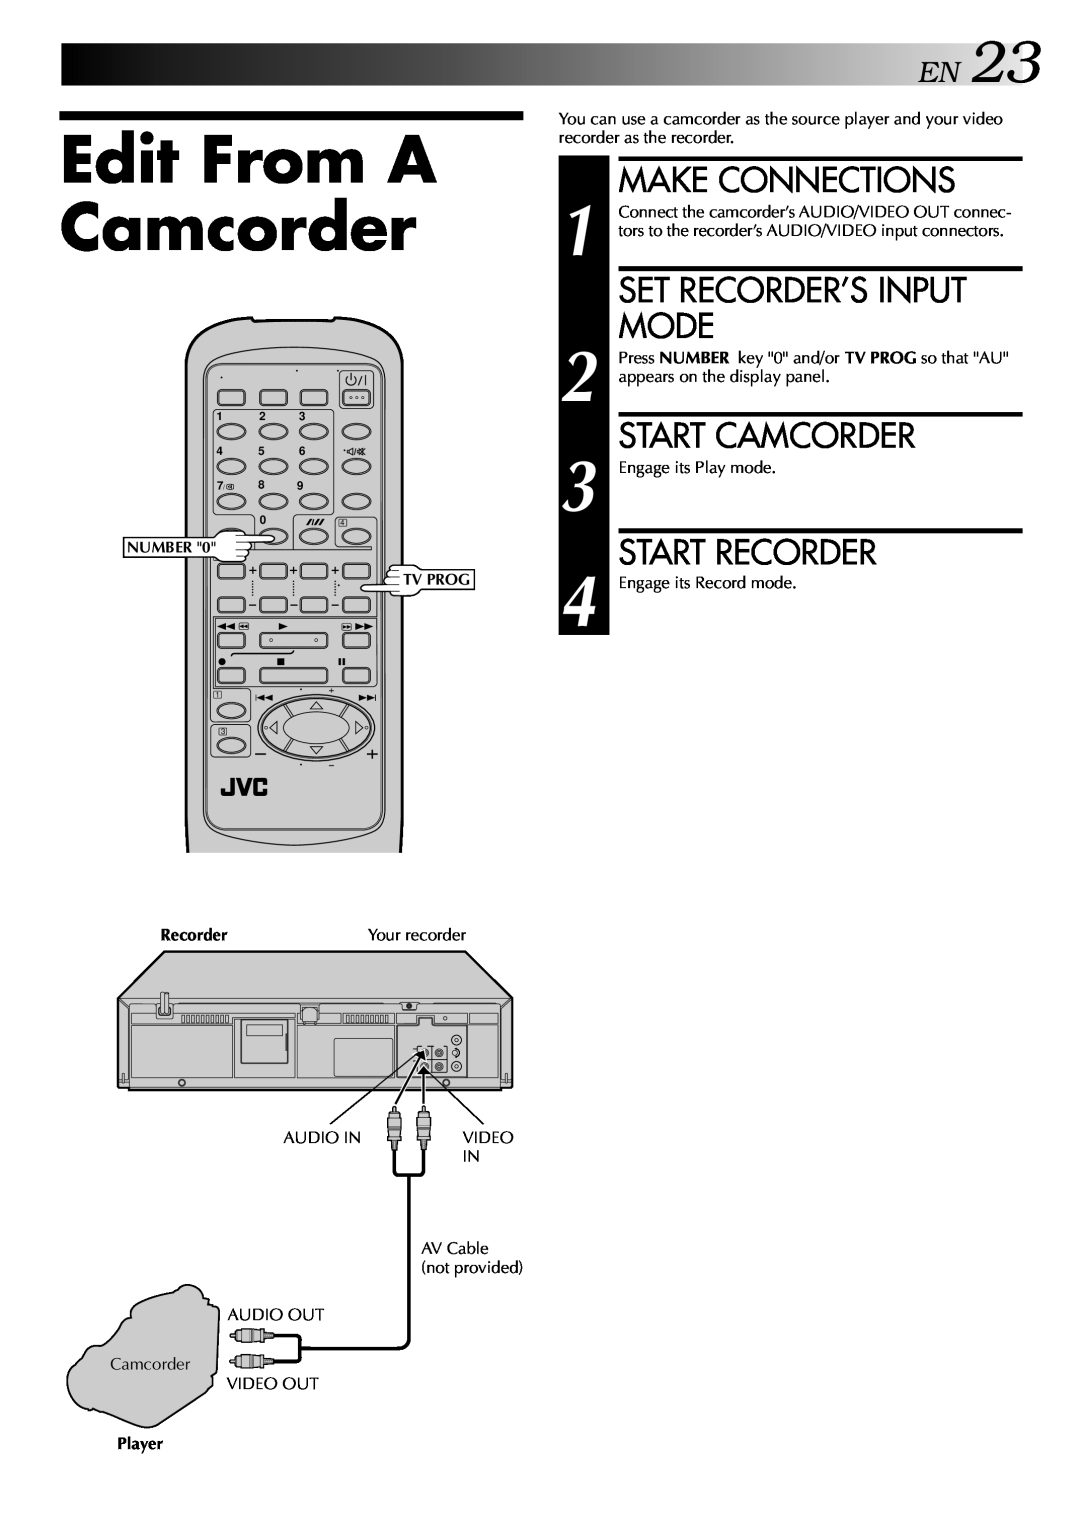 JVC HR-J245EA Edit From A Camcorder, EN23, Set Recorder’S Input Mode, Start Camcorder, Start Recorder, Make Connections 